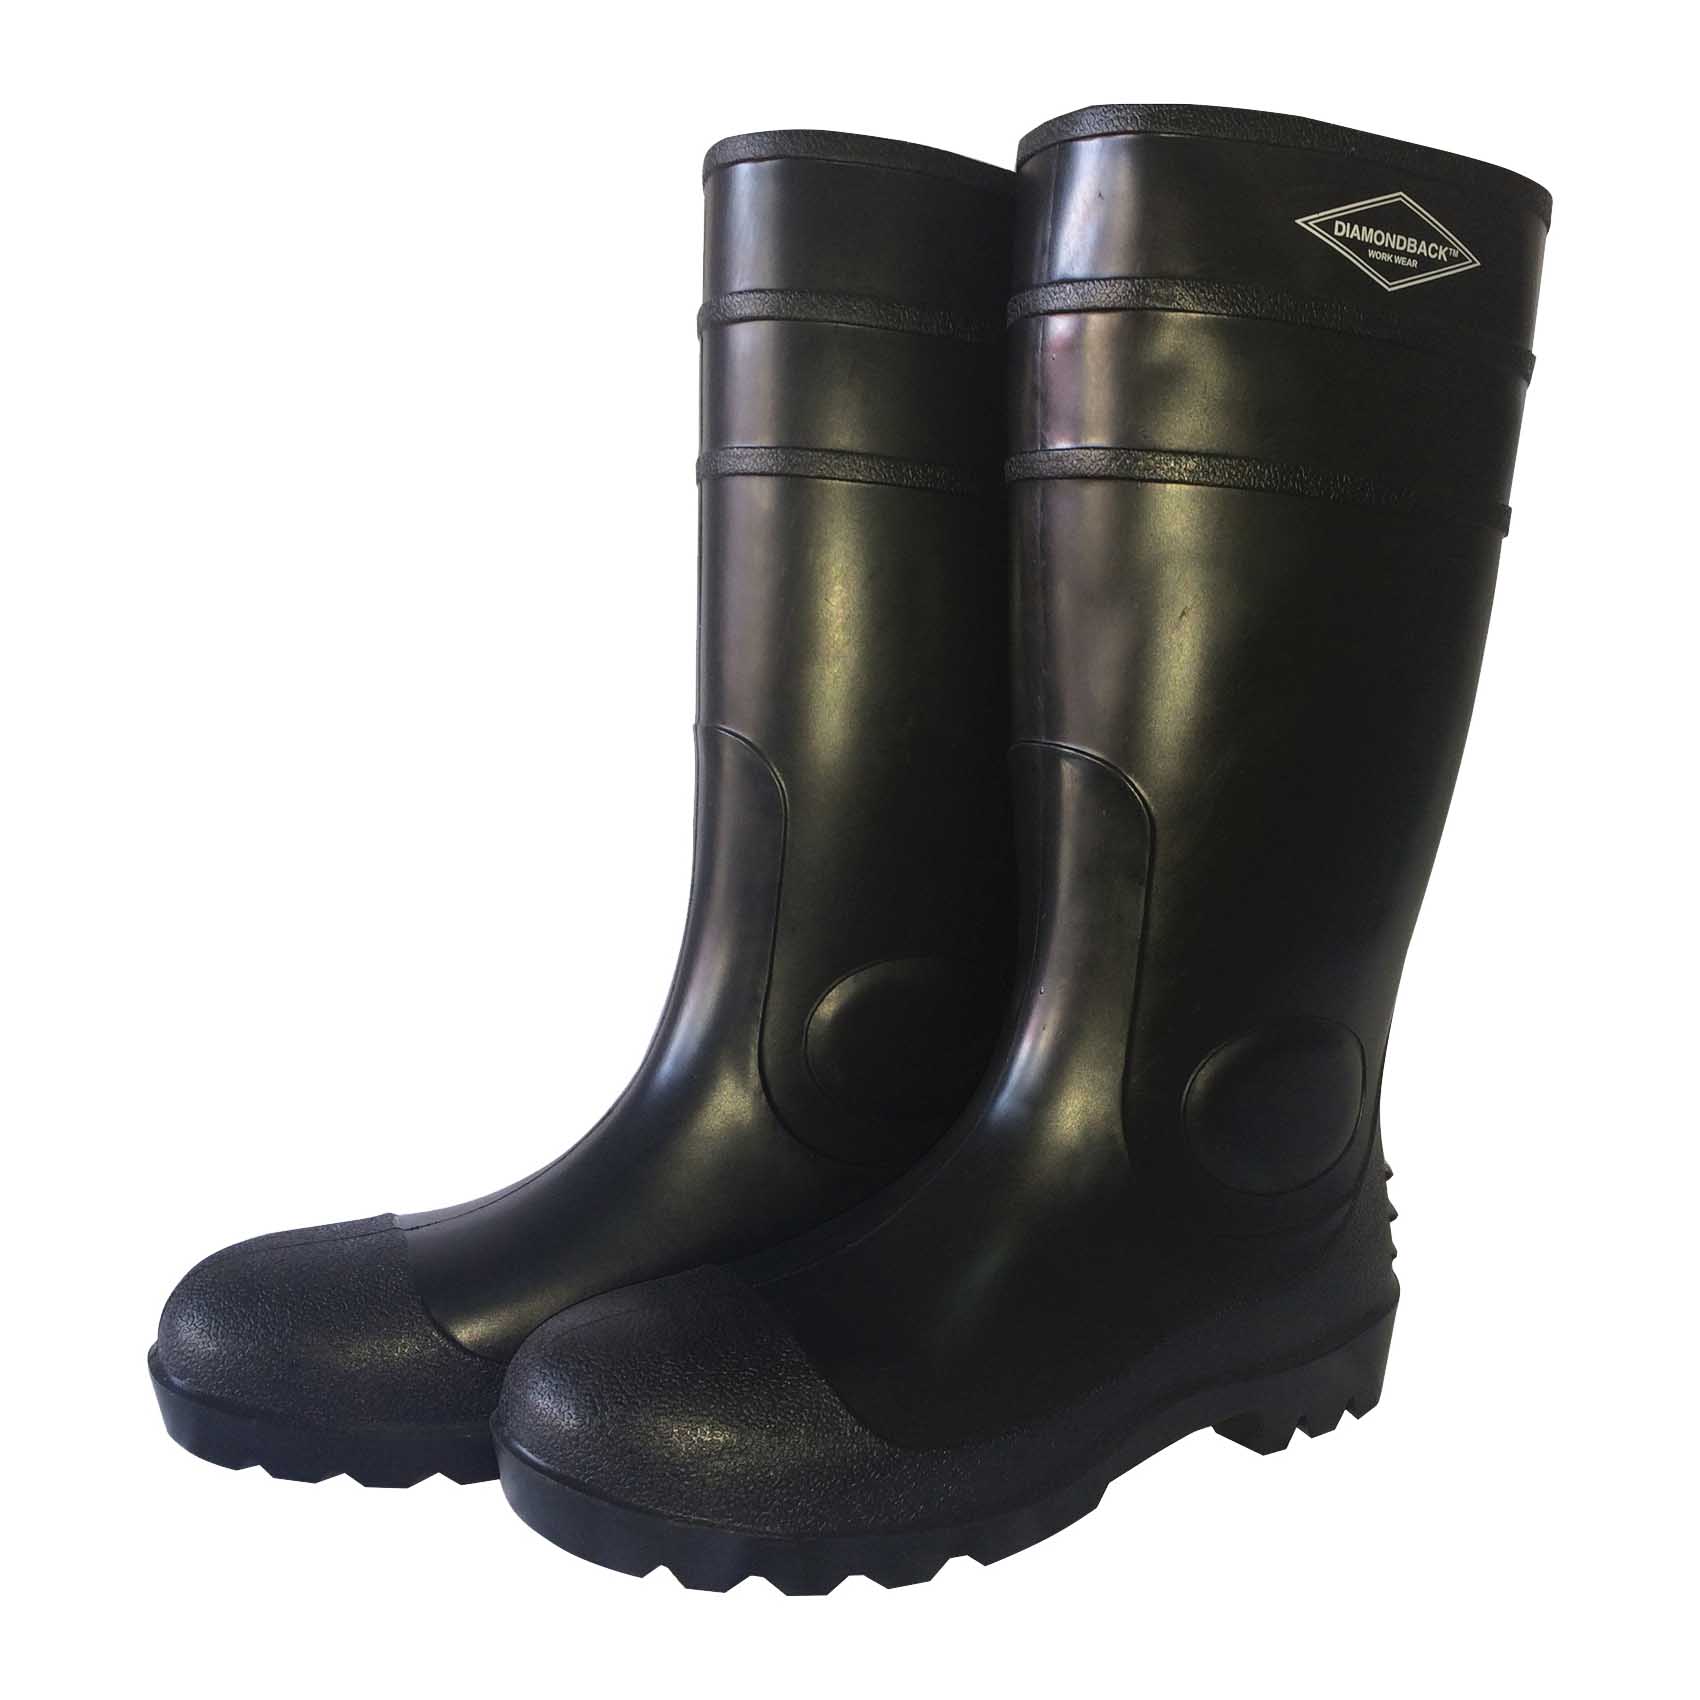 L-G06B16 Knee Boots, 16, Black, PVC Upper, Slip on Boots Closure